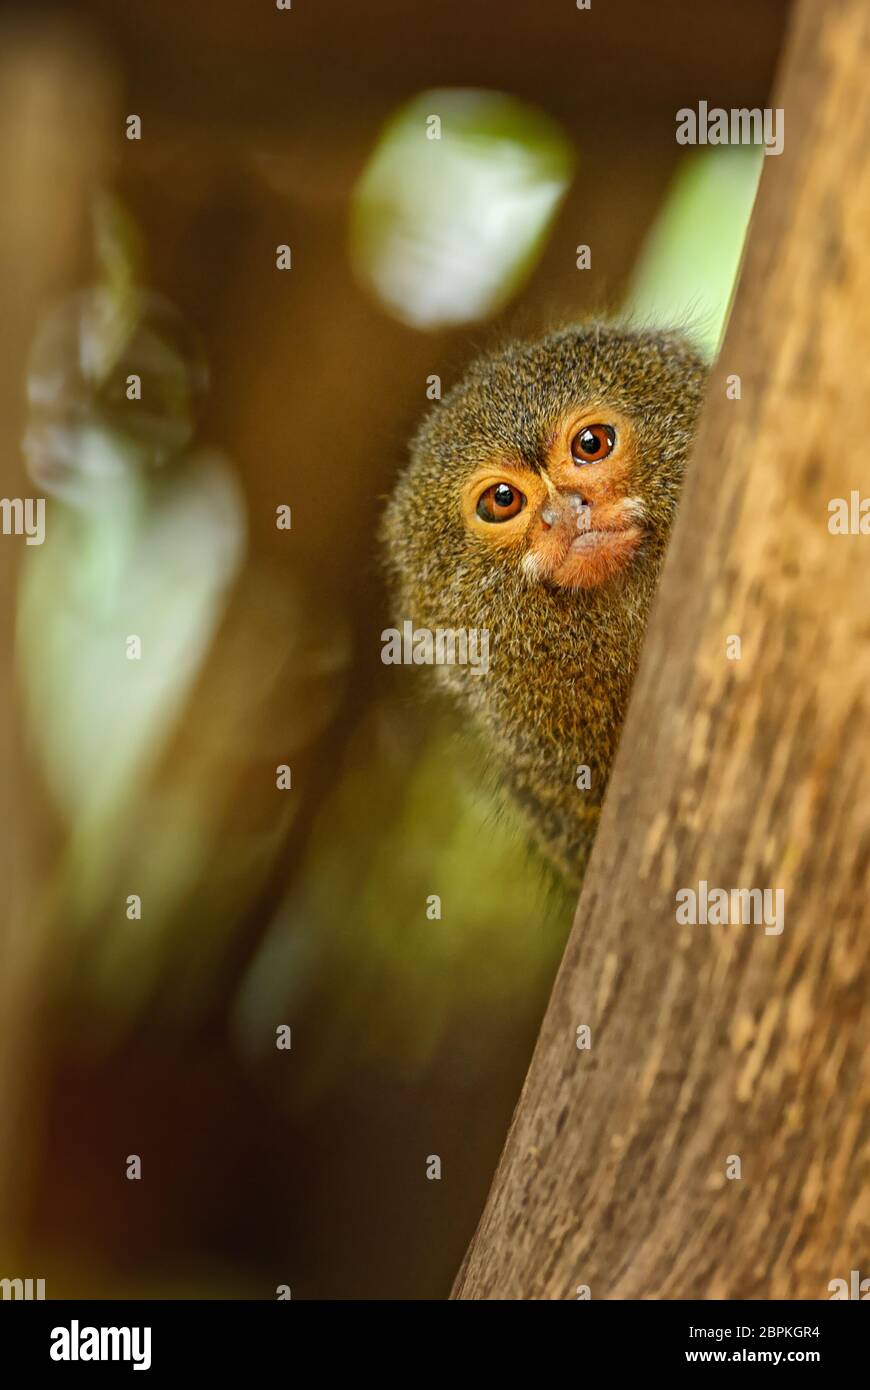 Marmoset pygmée - Cebuella pygmaea, primate en voie de disparition provenant des forêts et des terres boisées sud-américaines, Brésil. Banque D'Images